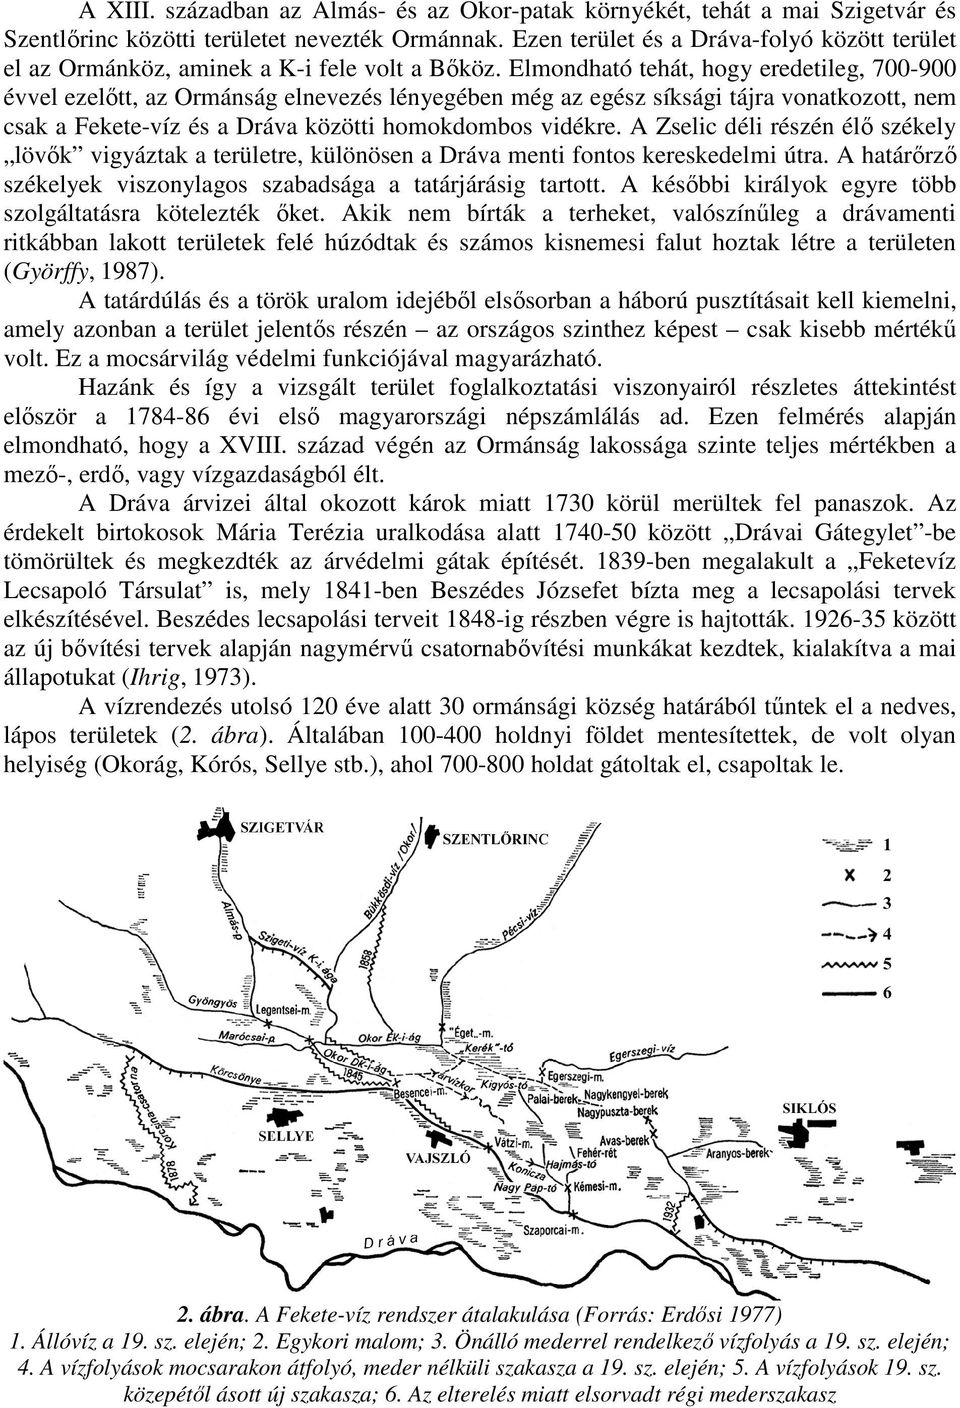 Elmondható tehát, hogy eredetileg, 700-900 évvel ezelıtt, az Ormánság elnevezés lényegében még az egész síksági tájra vonatkozott, nem csak a Fekete-víz és a Dráva közötti homokdombos vidékre.